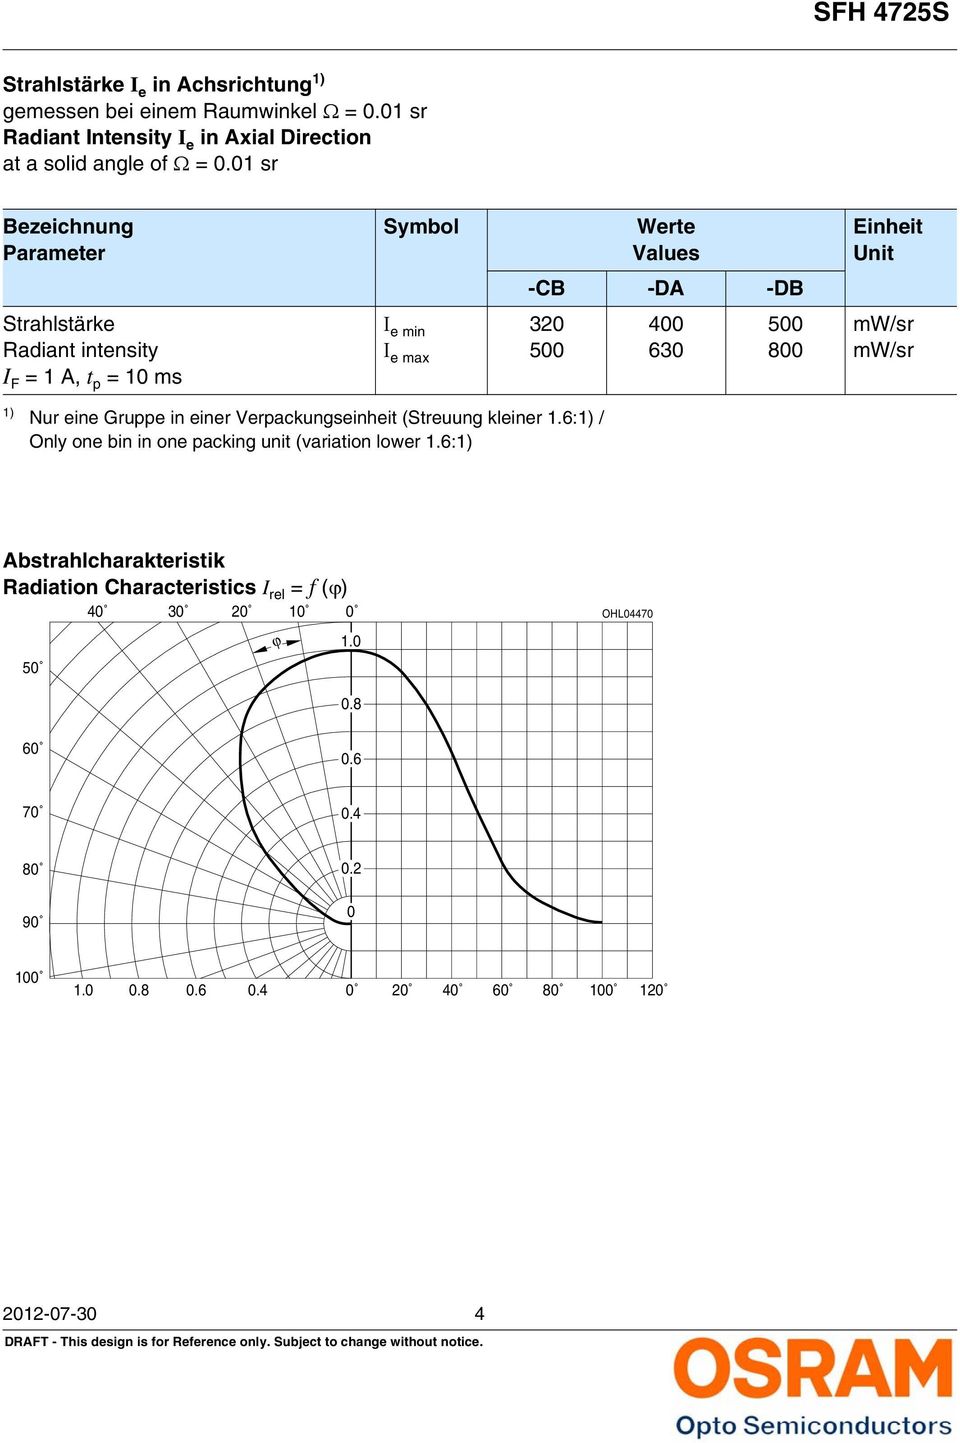 1 sr Bezeichnung Parameter Strahlstärke Radiant intensity Ι e min 32 Ι e max 5 Werte Values -CB -DA -DB 4 63 5 8 Einheit Unit mw/sr